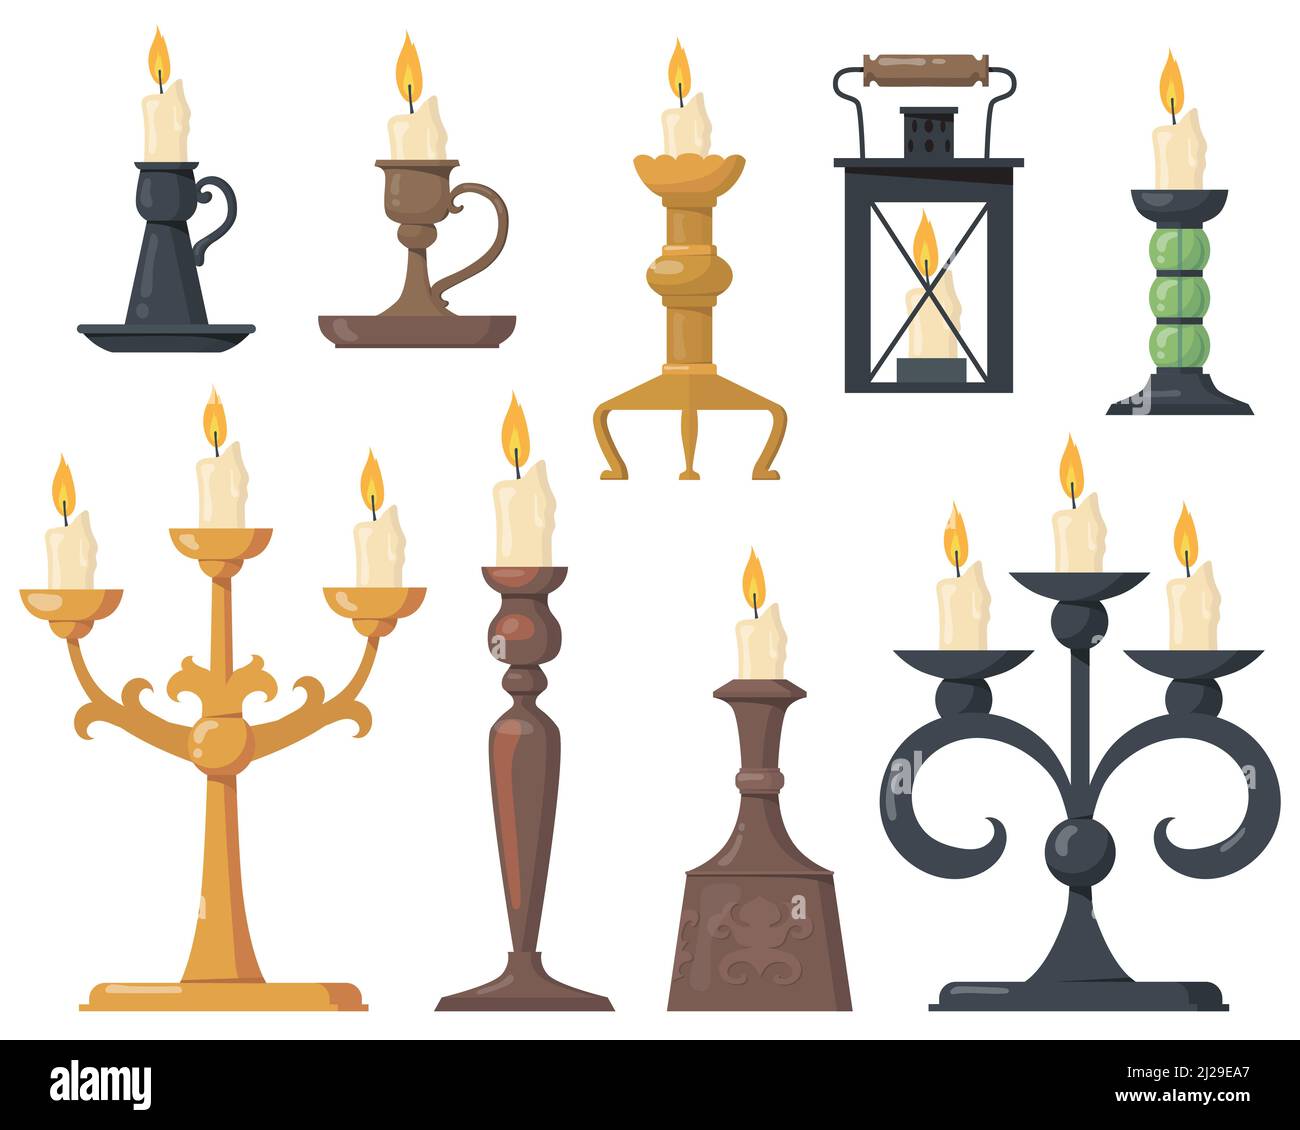 Bougies vintage en chandeliers ensemble d'icônes plates. Dessin animé élégant candélabres victoriens et supports rétro pour bougies vecteur isolé illustration colec Illustration de Vecteur